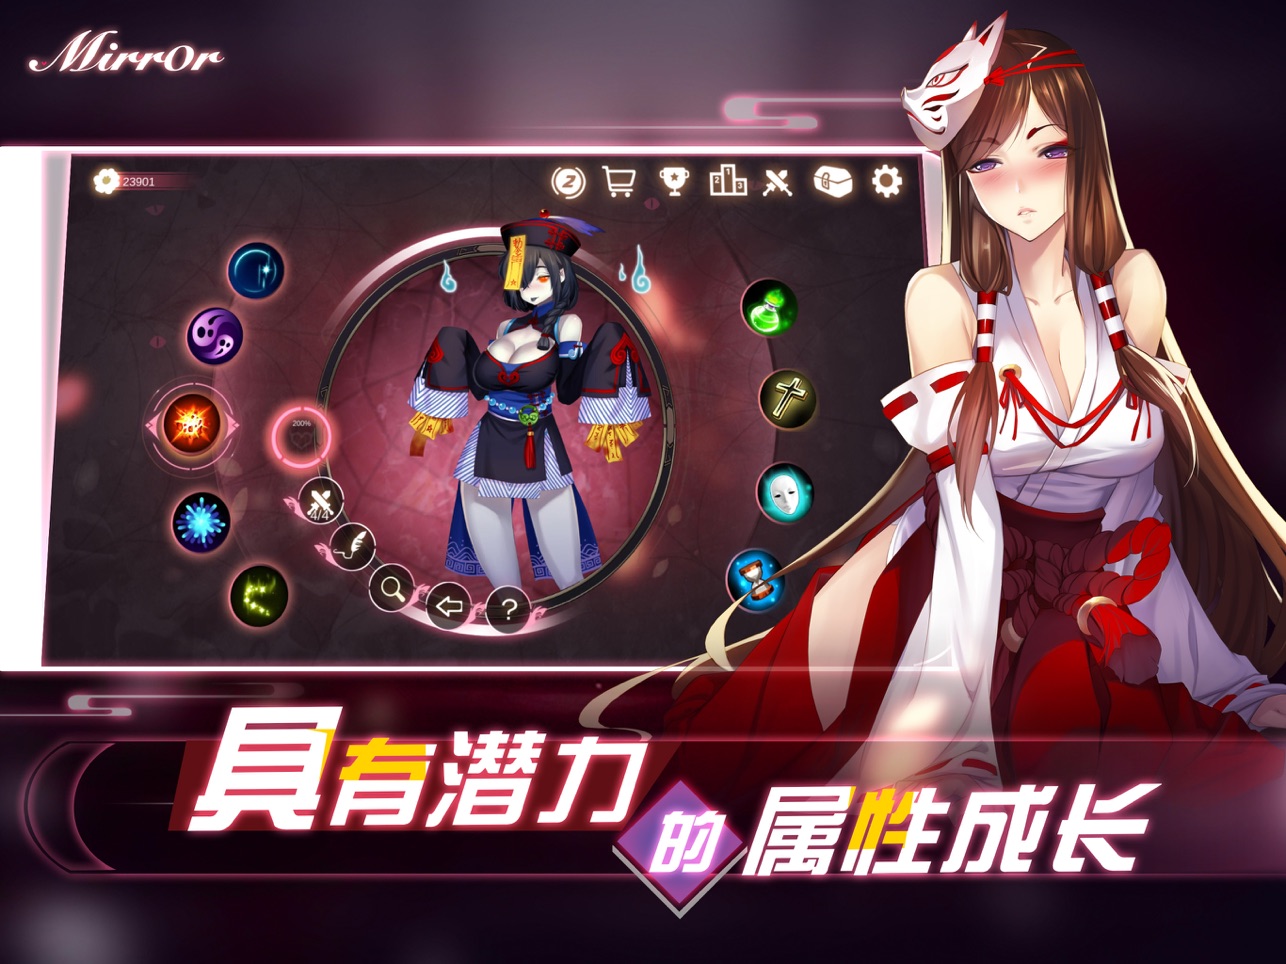 Mirror魔镜 V3.31最新版官方中文全DLC手游app截图